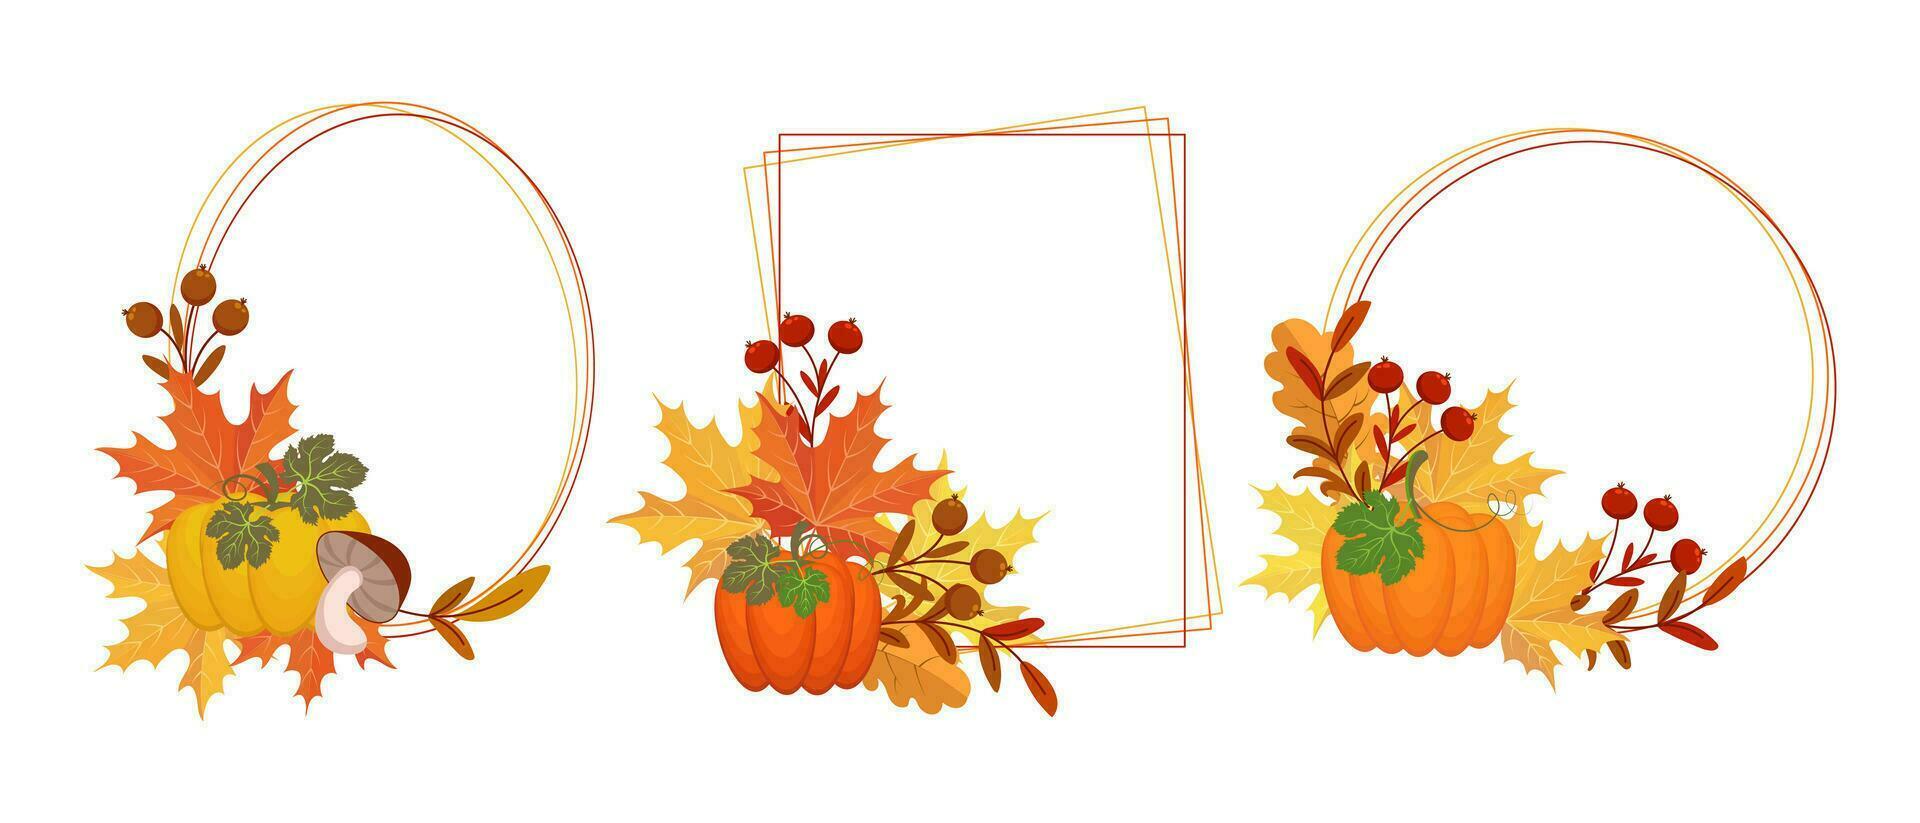 Thanksgiving geometrische Rahmen gesetzt. Kompositionen aus Kürbissen, Herbstlaub, Eberesche und Pilzen. Grußkarte für Text, Vektor